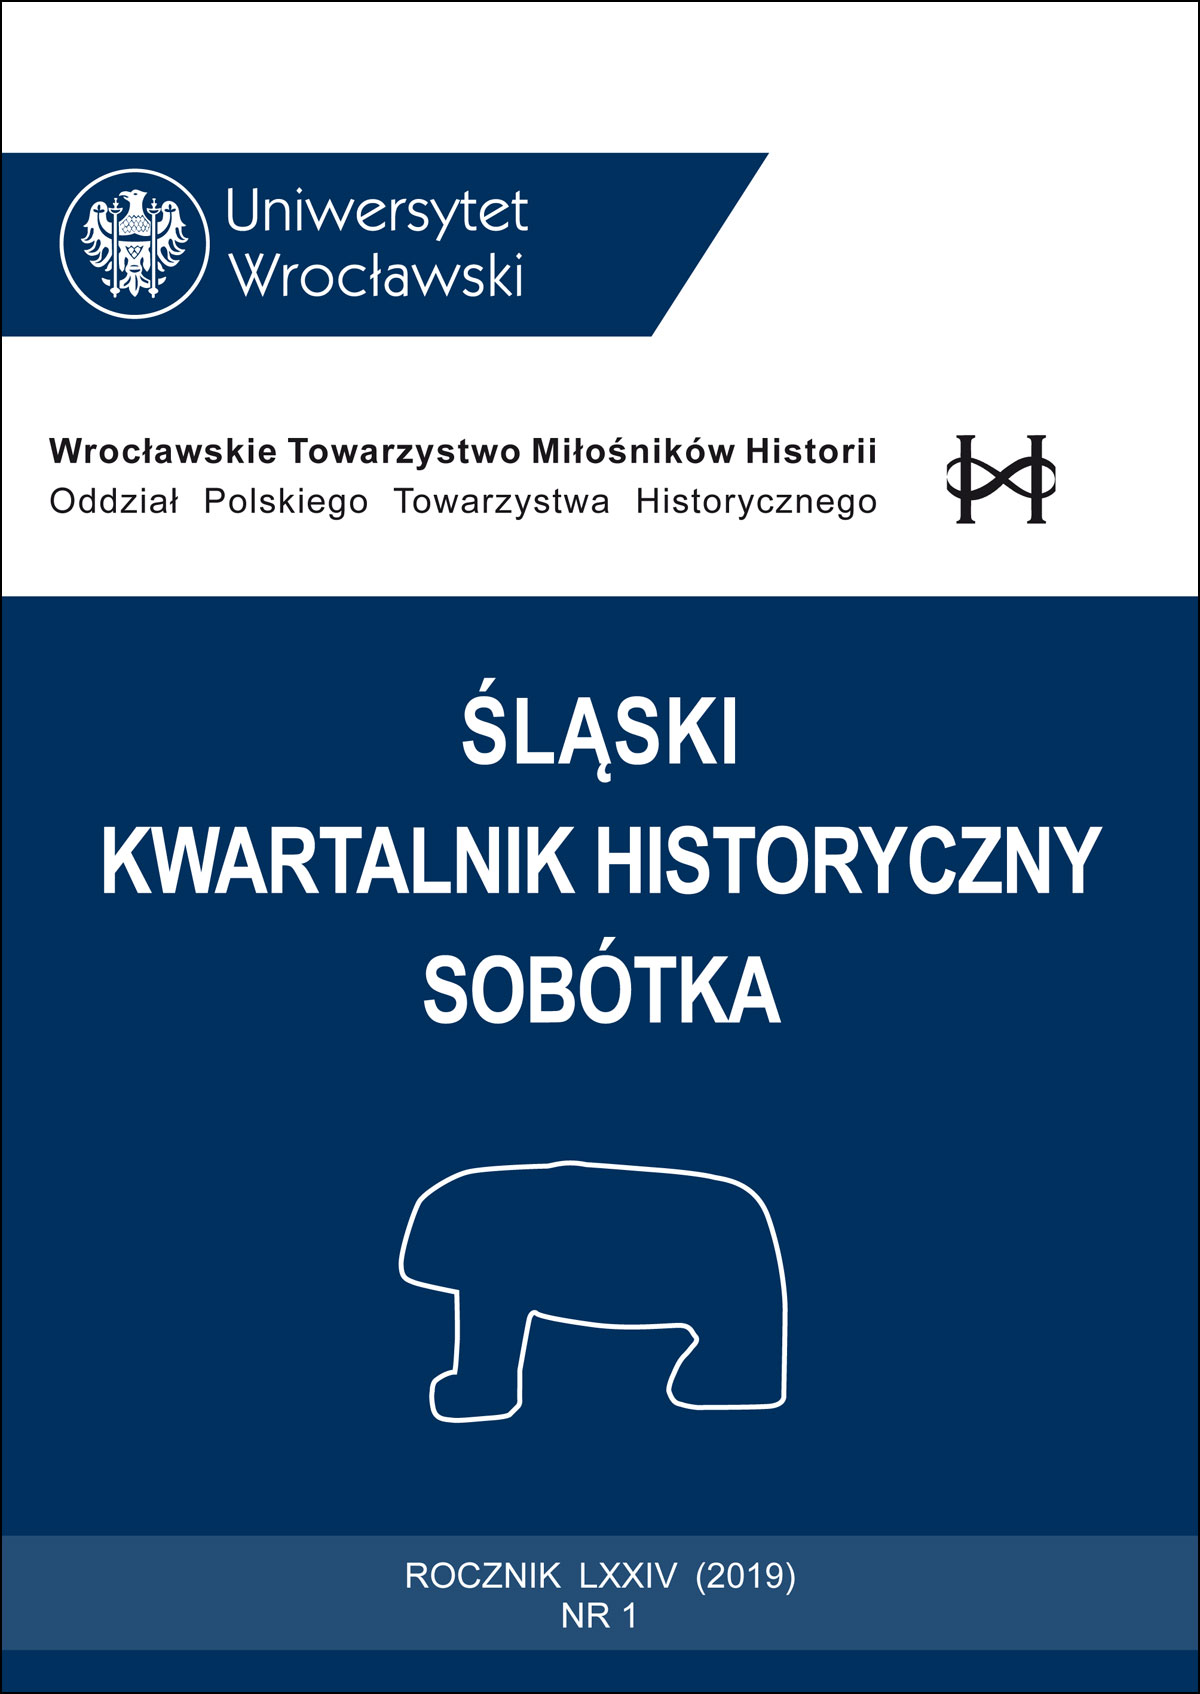 Wital’ Hałubowicz, Połackaja szljachta i dynastyja Wazau, Minsk: Wydawjec A. M. Januszkjewicz, 2016, ss. 224